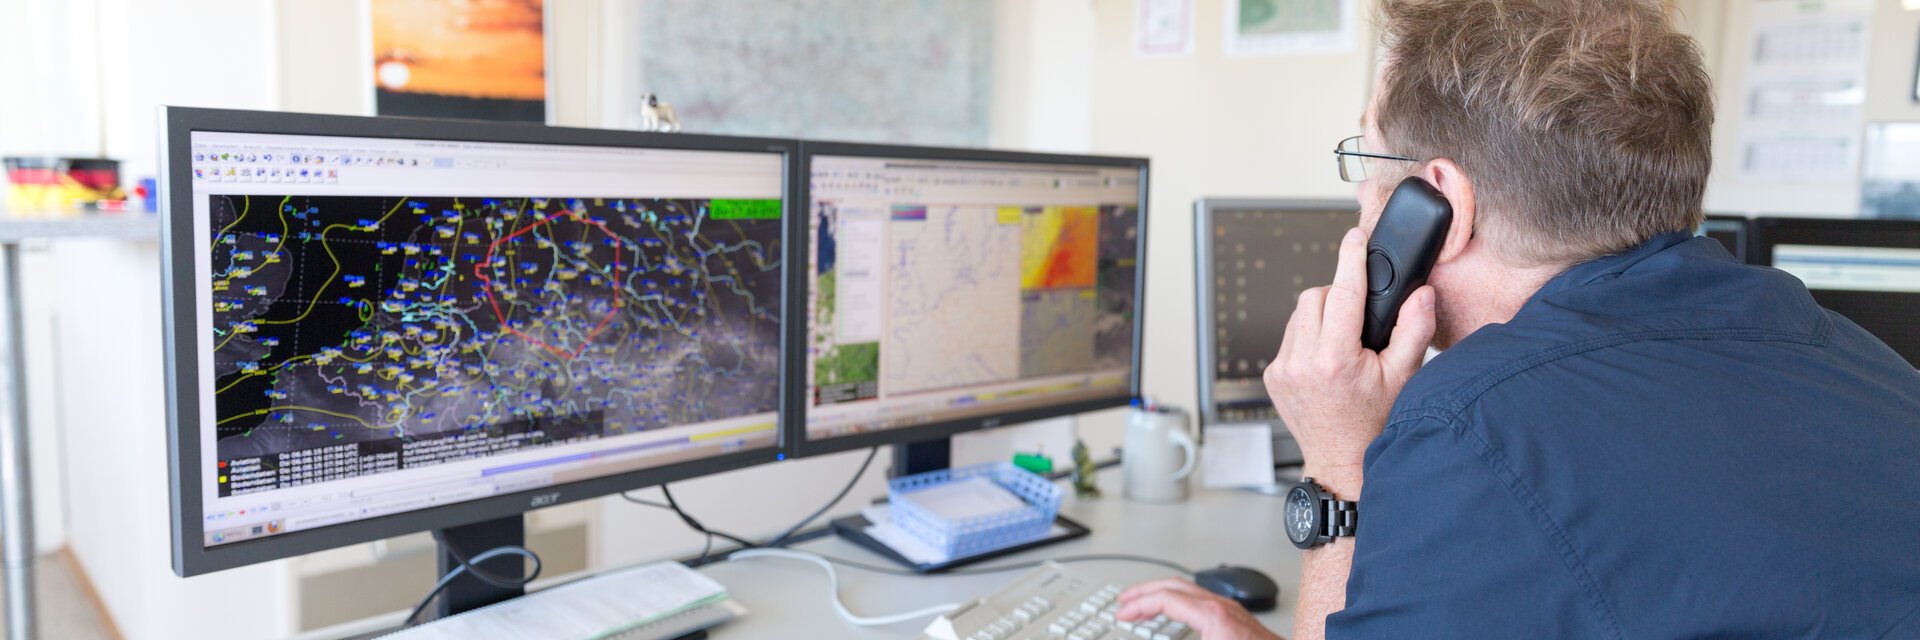 Ein Mitrbeiter des Wetterdienstes telefoniert und schaut dabei auf seine zwei Monitore mit Wetterkarten